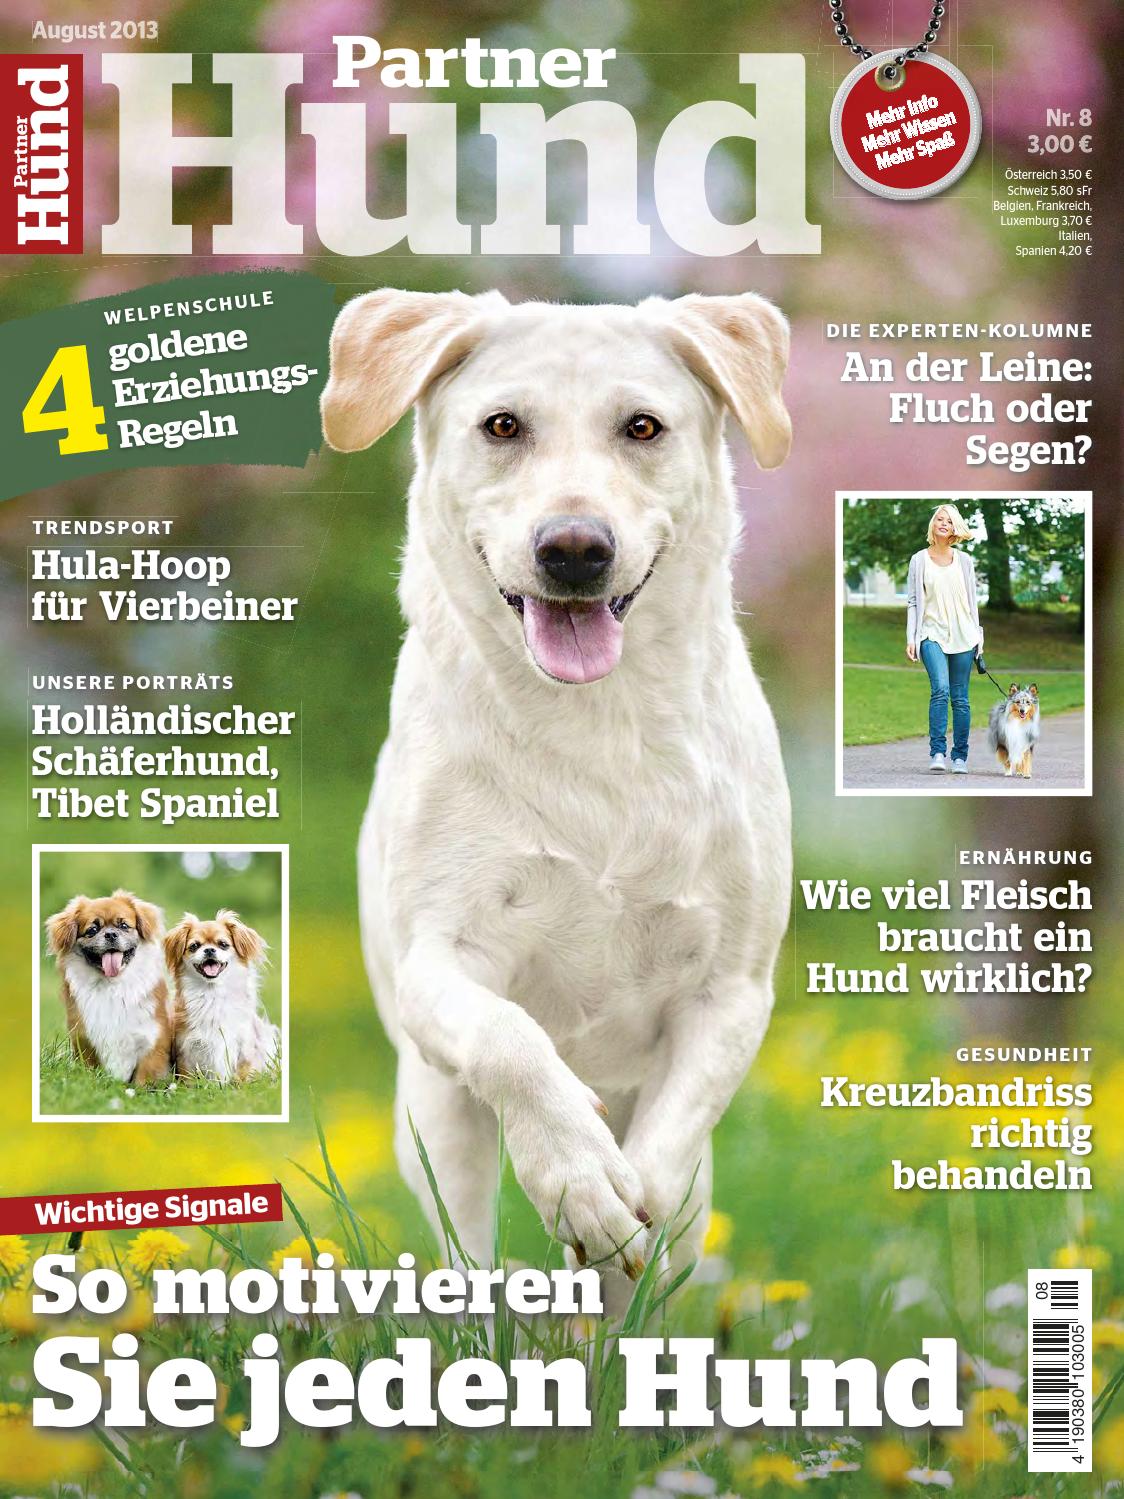 Kot Im Garten Von Welchem Tier Schön Partner Hund August 2013 by Triendl Peter Paul issuu